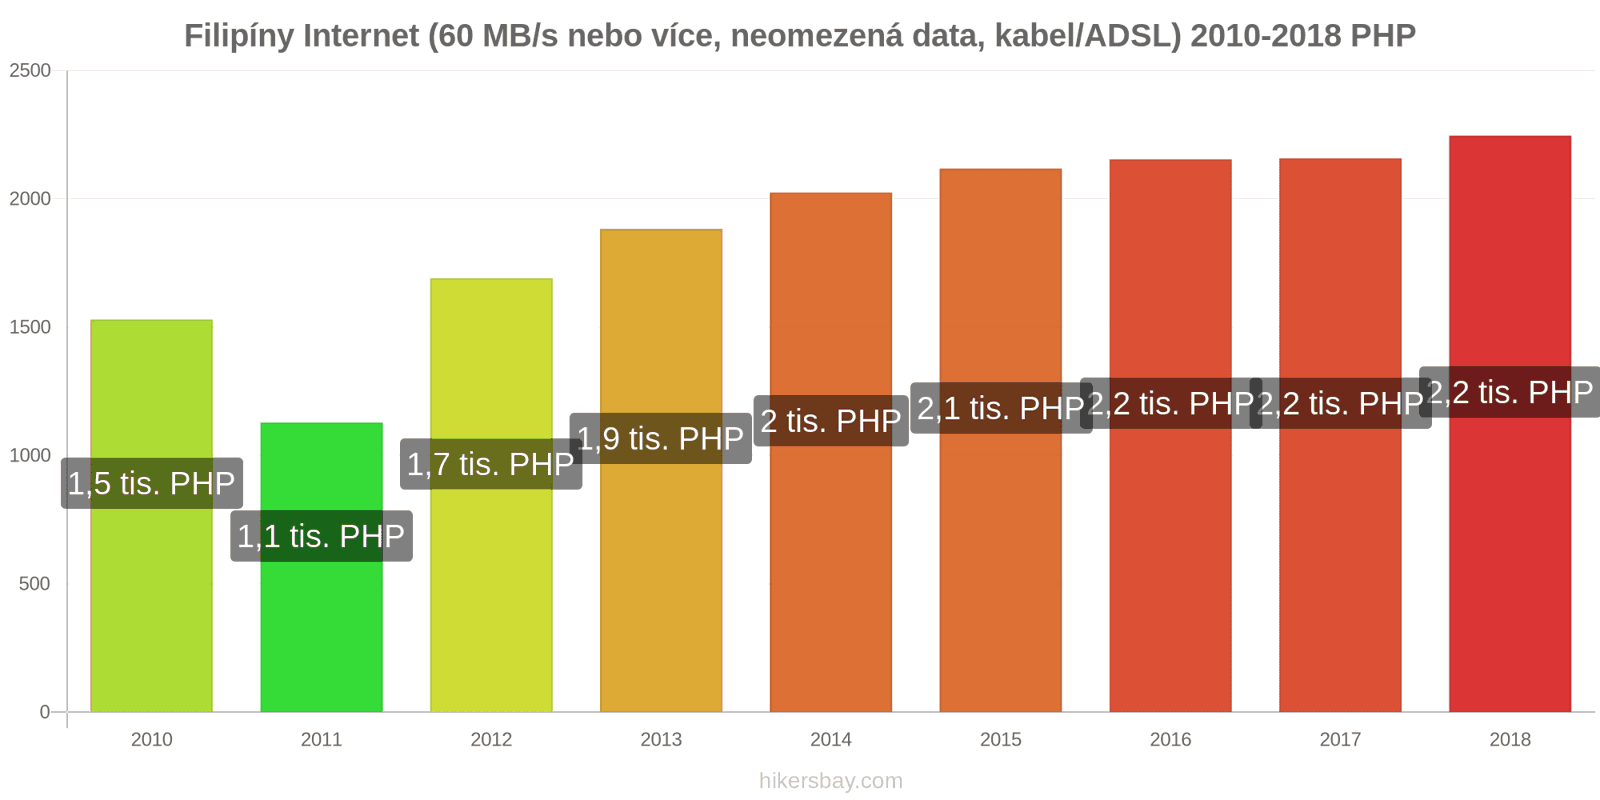 Filipíny změny cen Internet (60 Mbps nebo více, neomezená data, kabel/ADSL) hikersbay.com